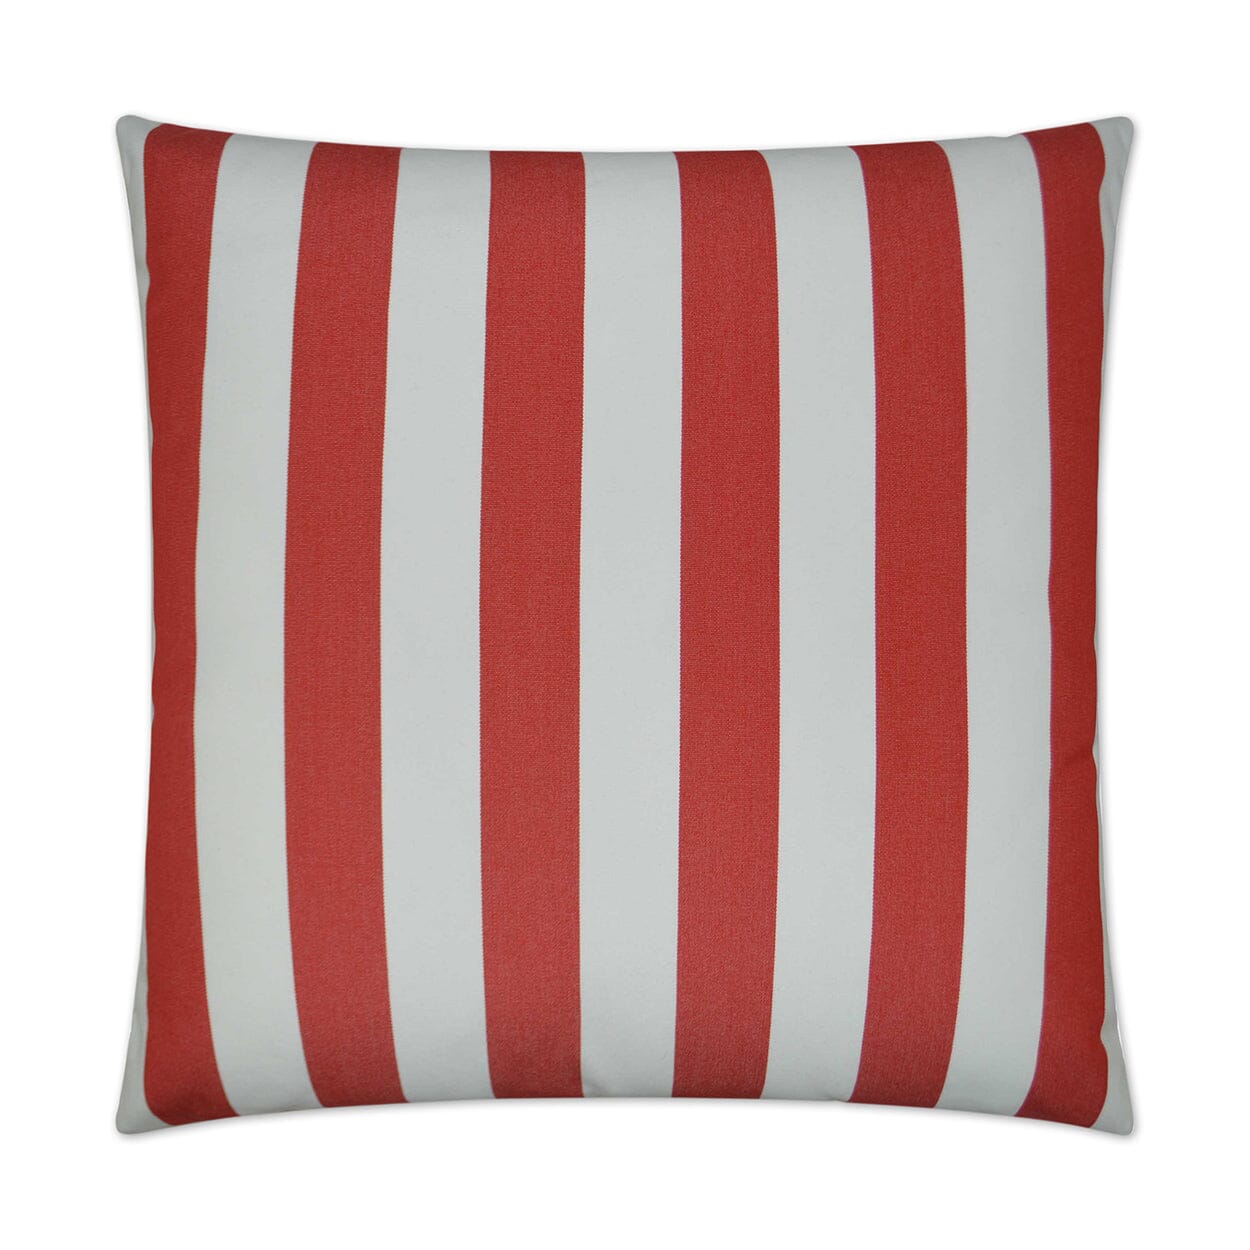 D.V. Kap 22" x 22" Outdoor Throw Pillow | Café Stripe Red Pillows D.V Kap Outdoor